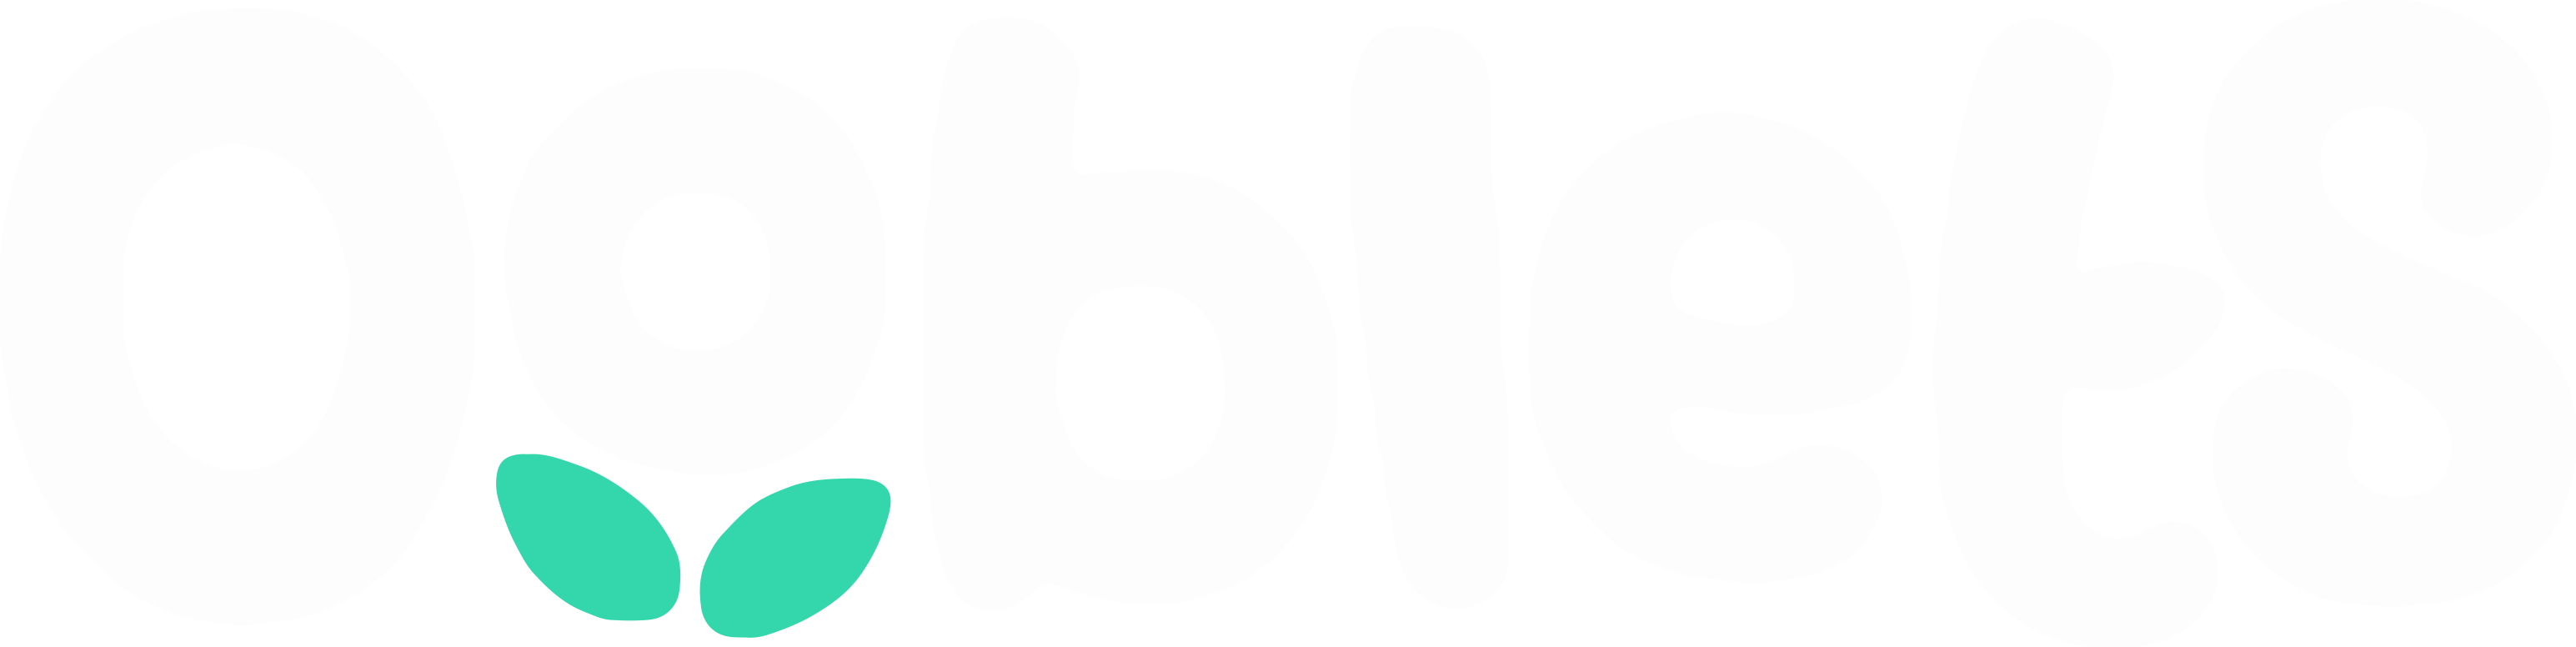 ooblets_logo.png